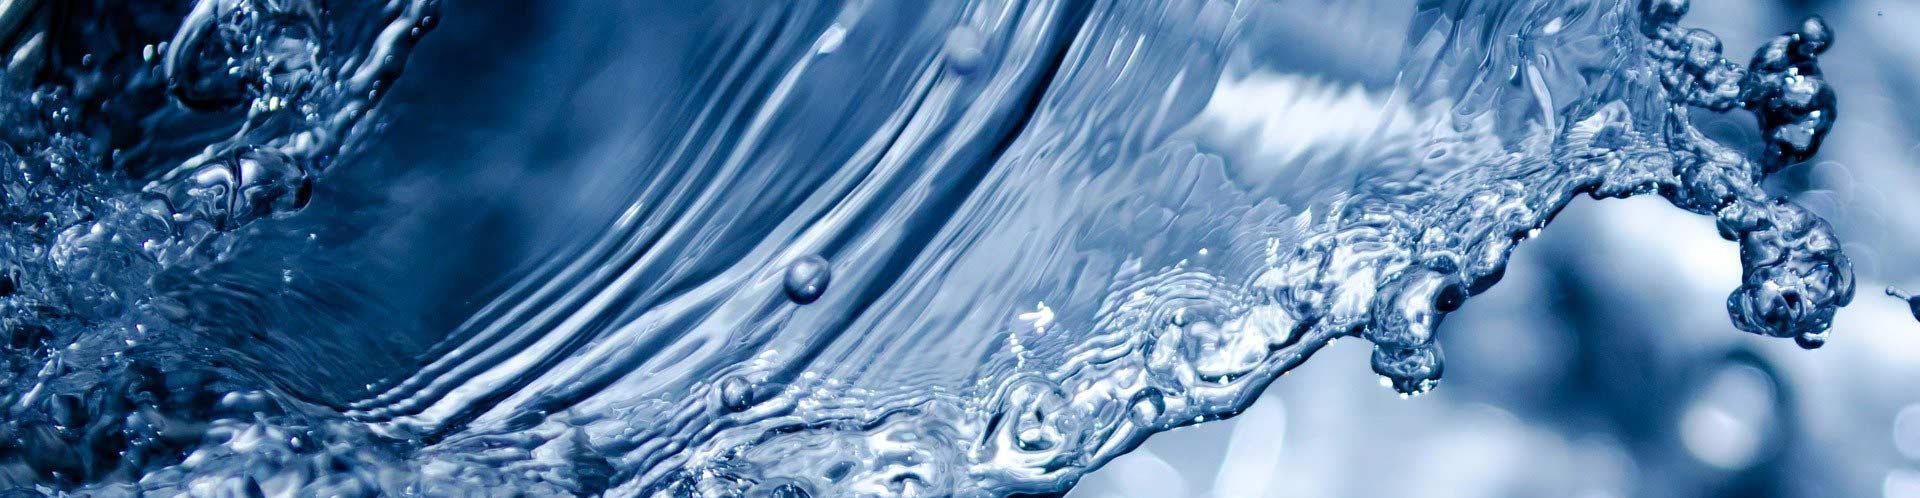 Abbildung von klarem und sauberen Wasser 